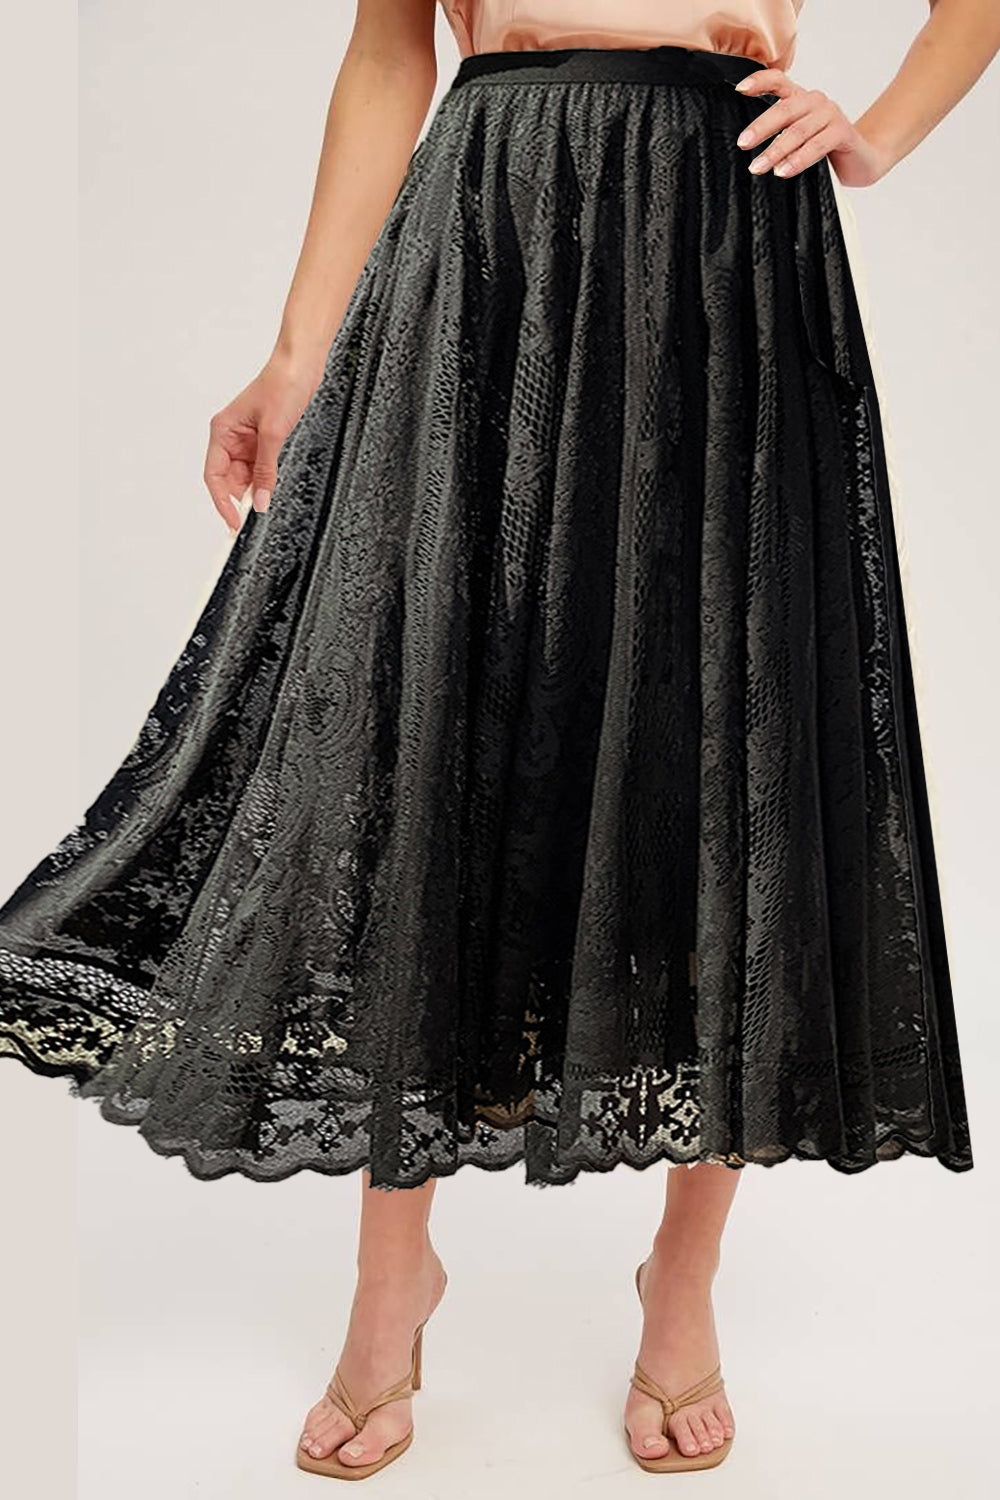 TEEK - Lace High Waist Midi Skirt SKIRT TEEK Trend Black S 